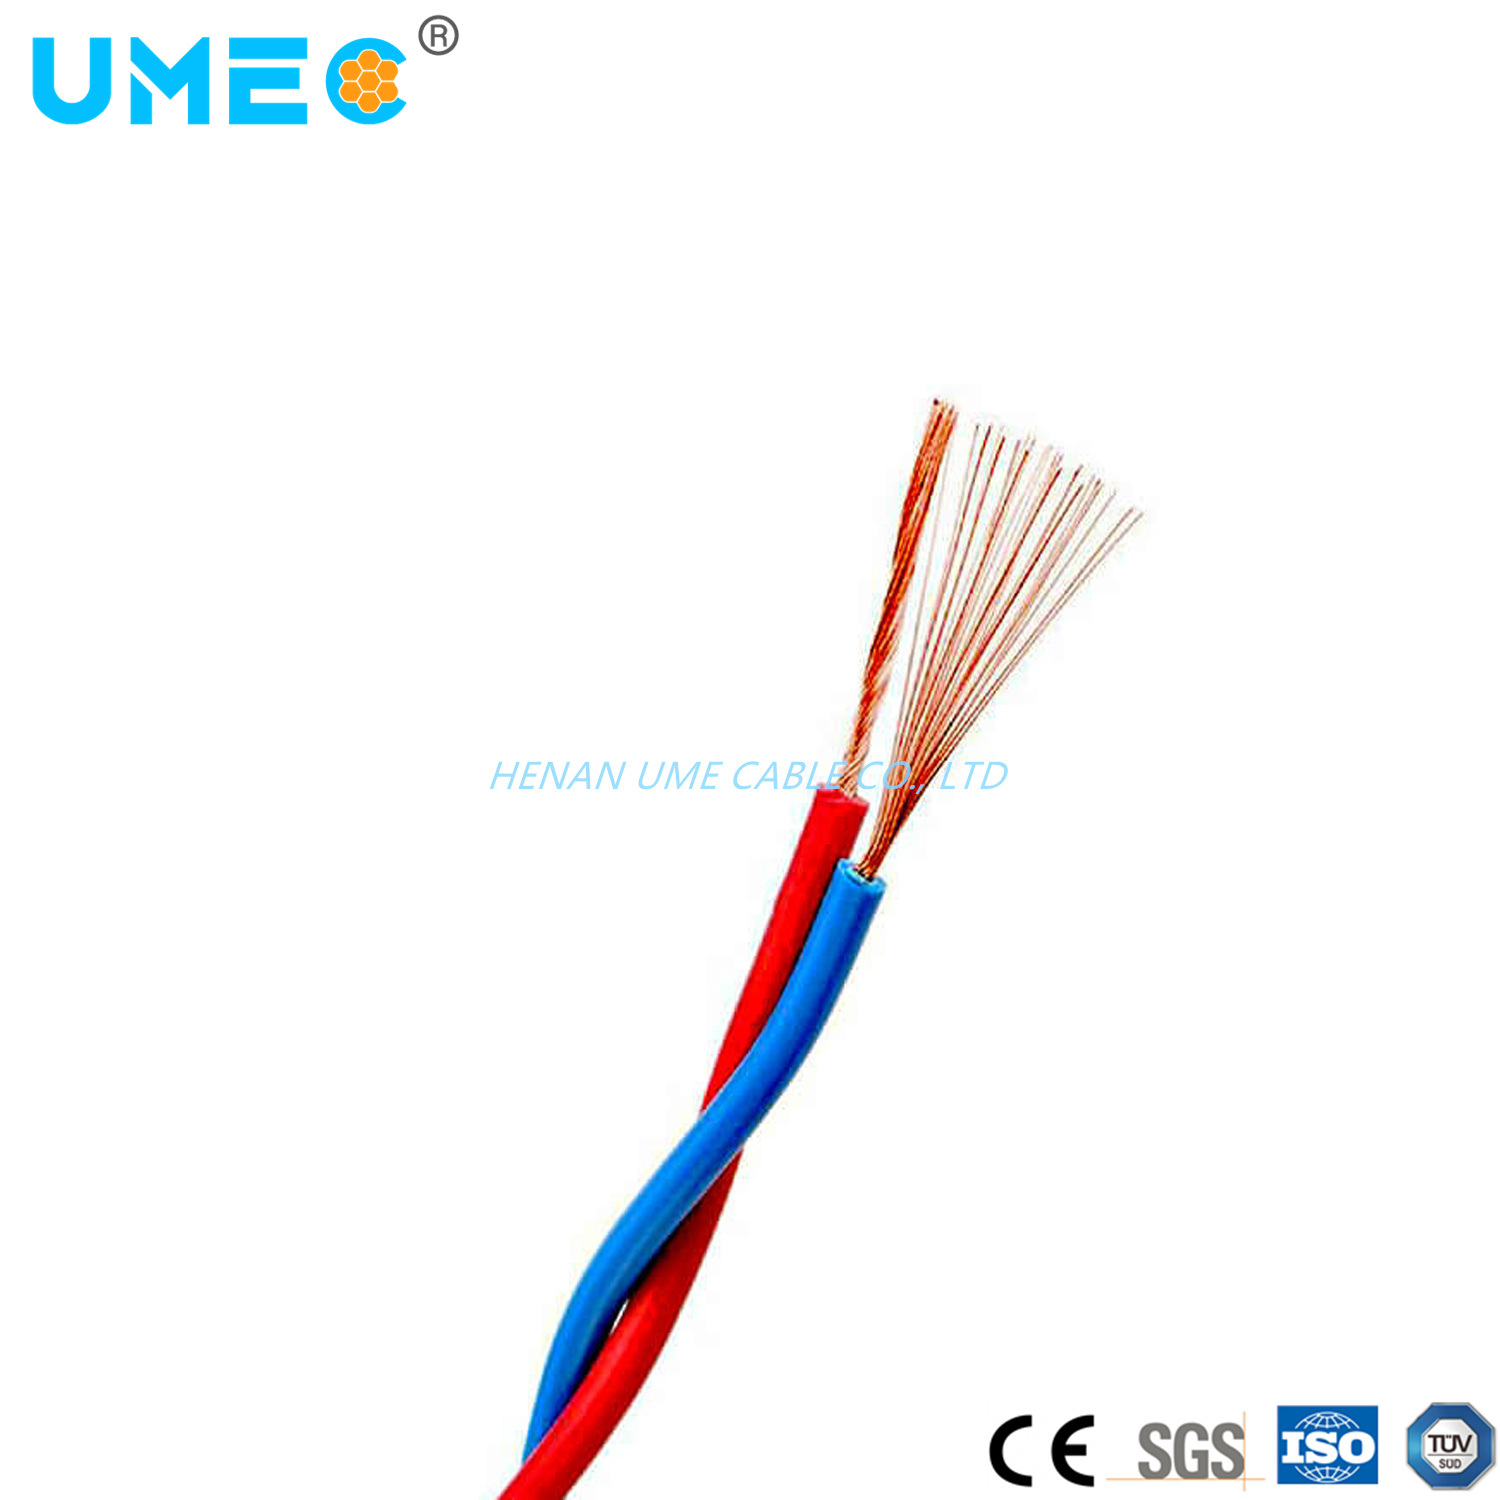 
                Китай Ume Zr-Rvs дополнительные гибкие электрические кабели и провода1мм2 150мм2 300/500V "витая пара" провод Rvs
            